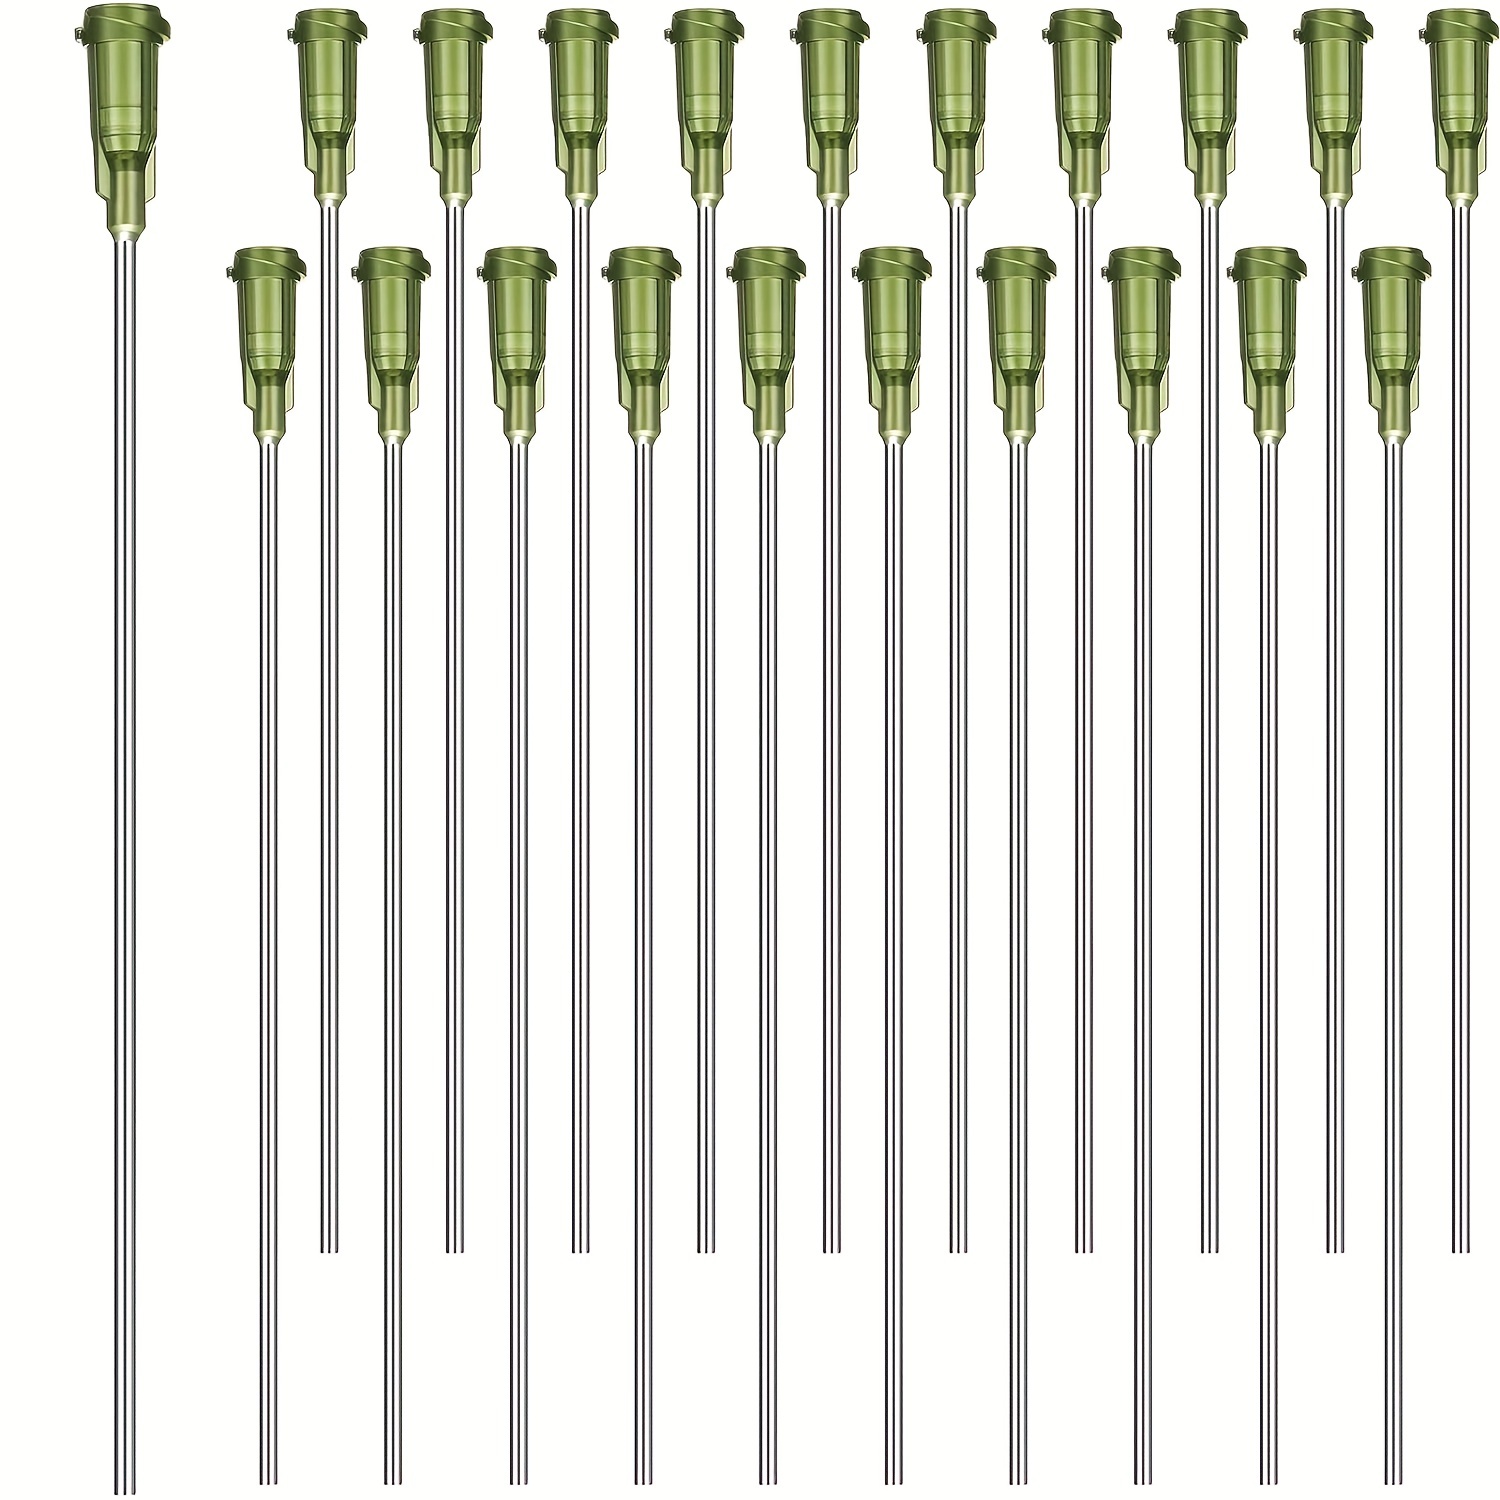 12 Pack Dispensing Needle Set, 1.97inch Stainless Steel Blunt Tip Luer Lock  8, 10, 12, 14, 16, 18 Gauge.: : Industrial & Scientific